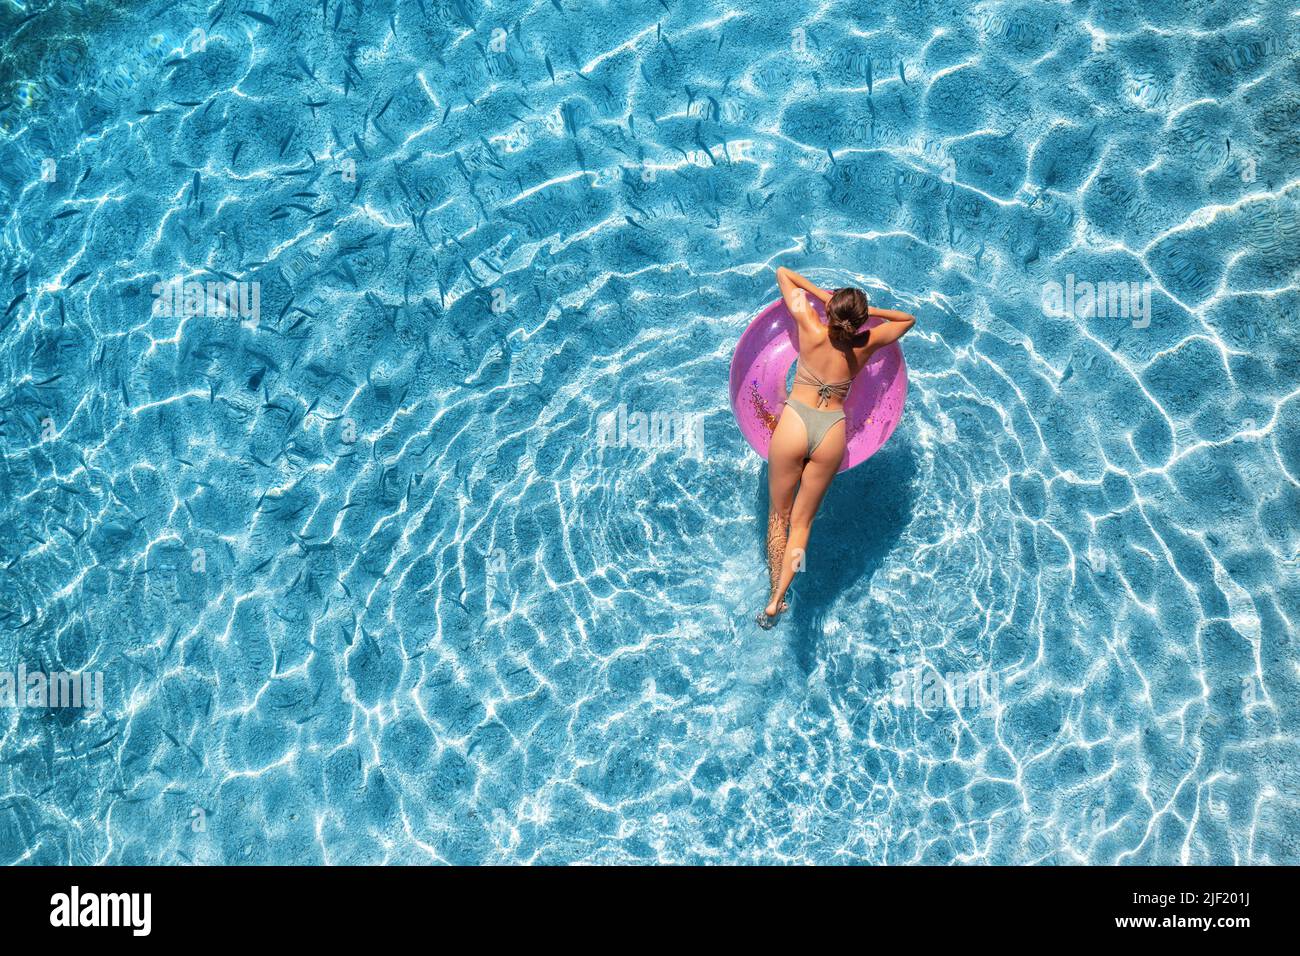 Vista aérea de una mujer nadando con anillo de natación rosa Foto de stock